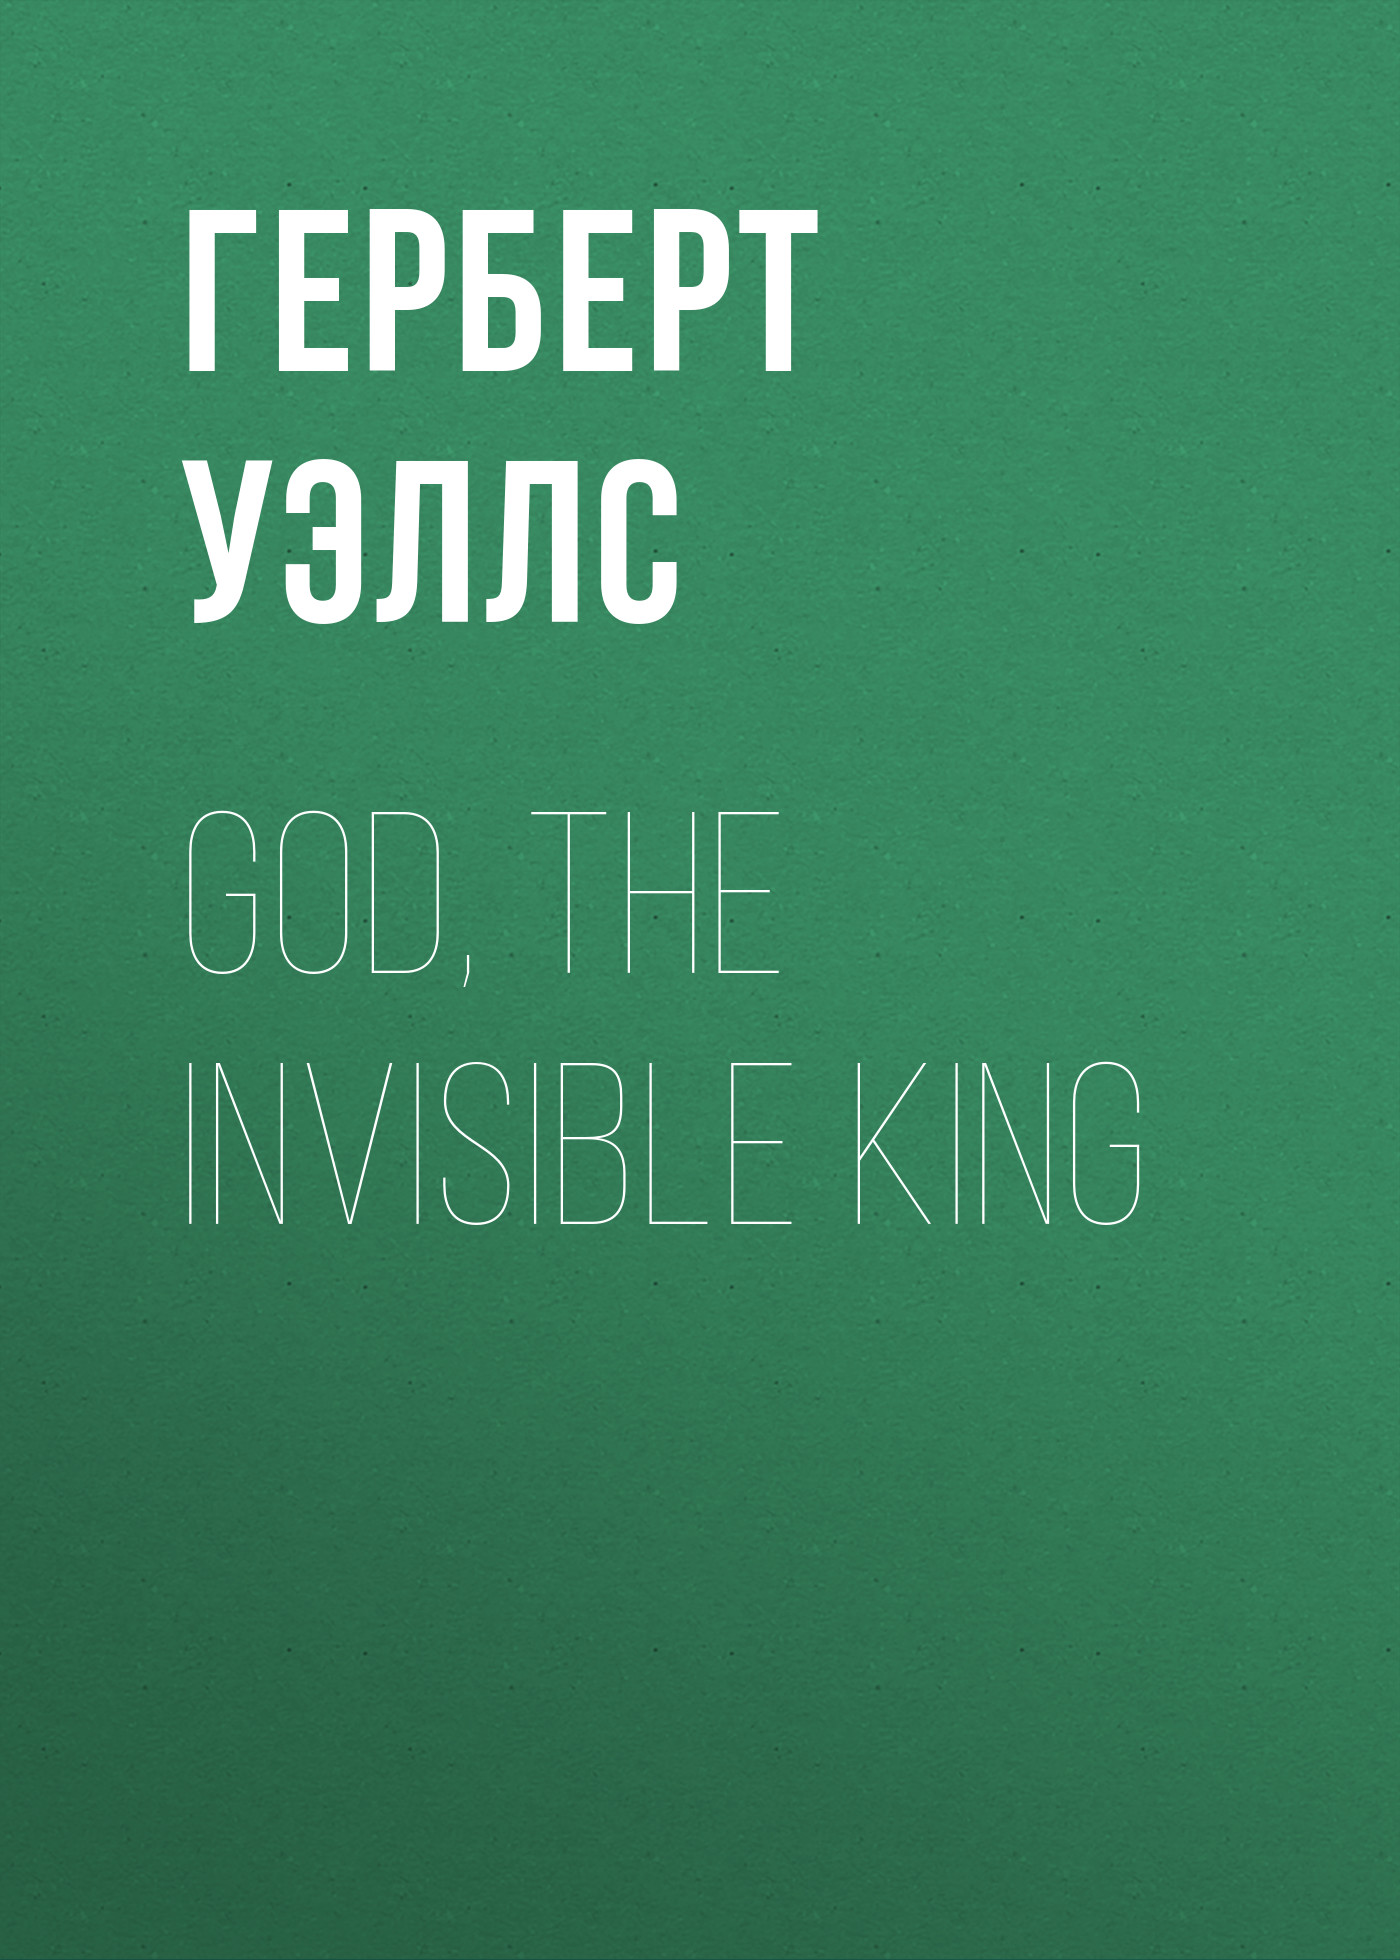 Книга God, the Invisible King из серии , созданная Герберт Уэллс, может относится к жанру Философия, Зарубежная классика. Стоимость электронной книги God, the Invisible King с идентификатором 25559724 составляет 0 руб.